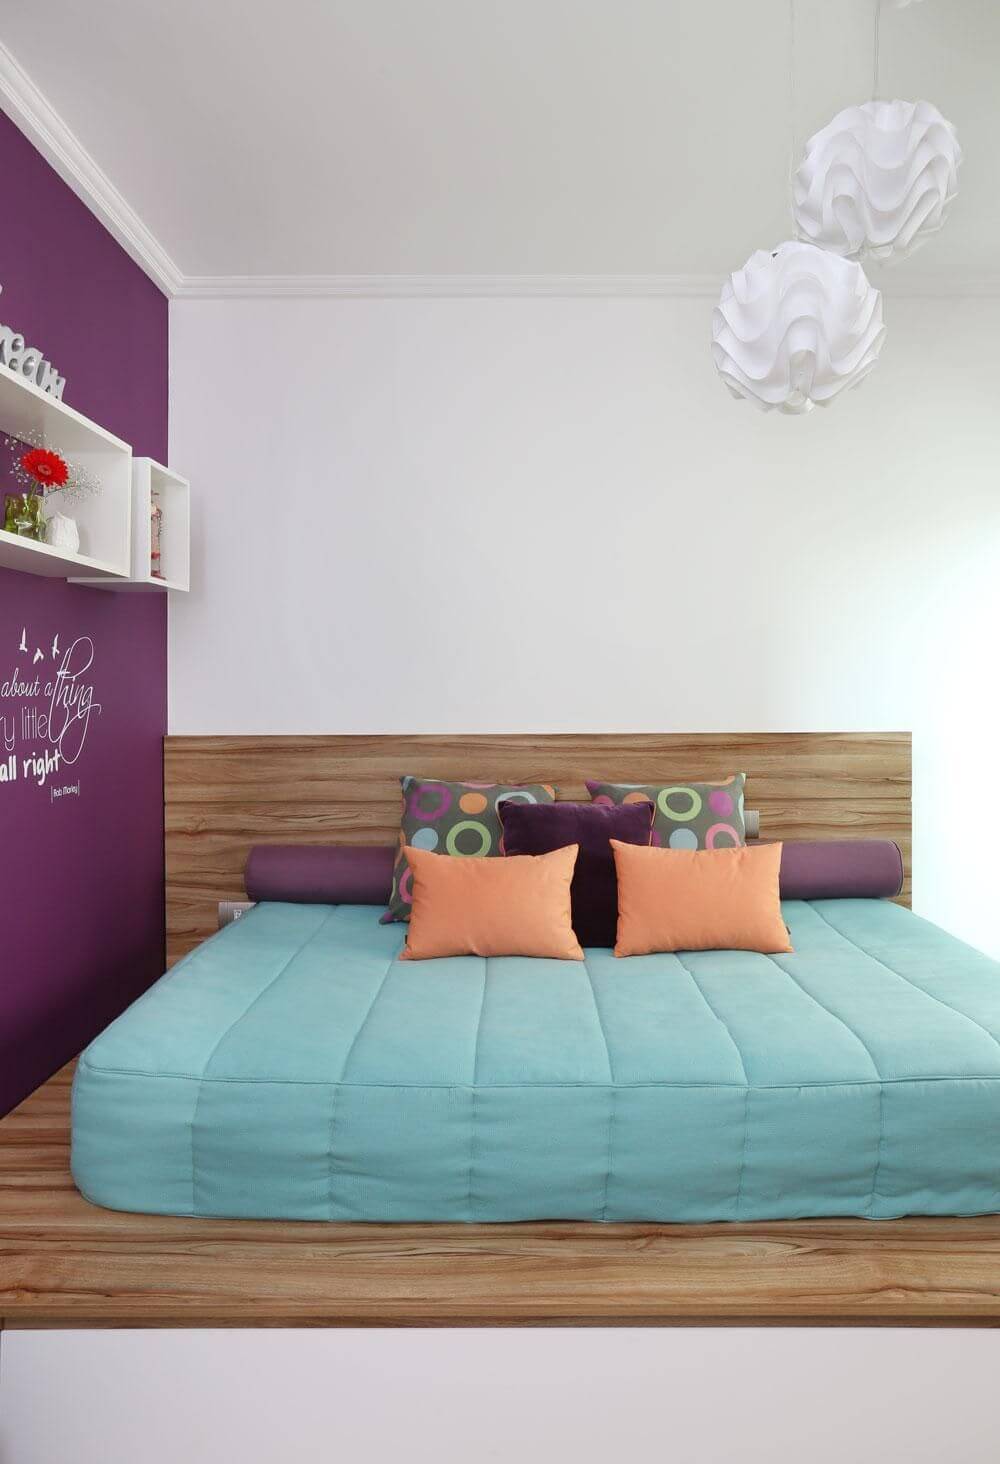 melhor travesseiro - parede com pintura roxa e nichos de madeira branca 